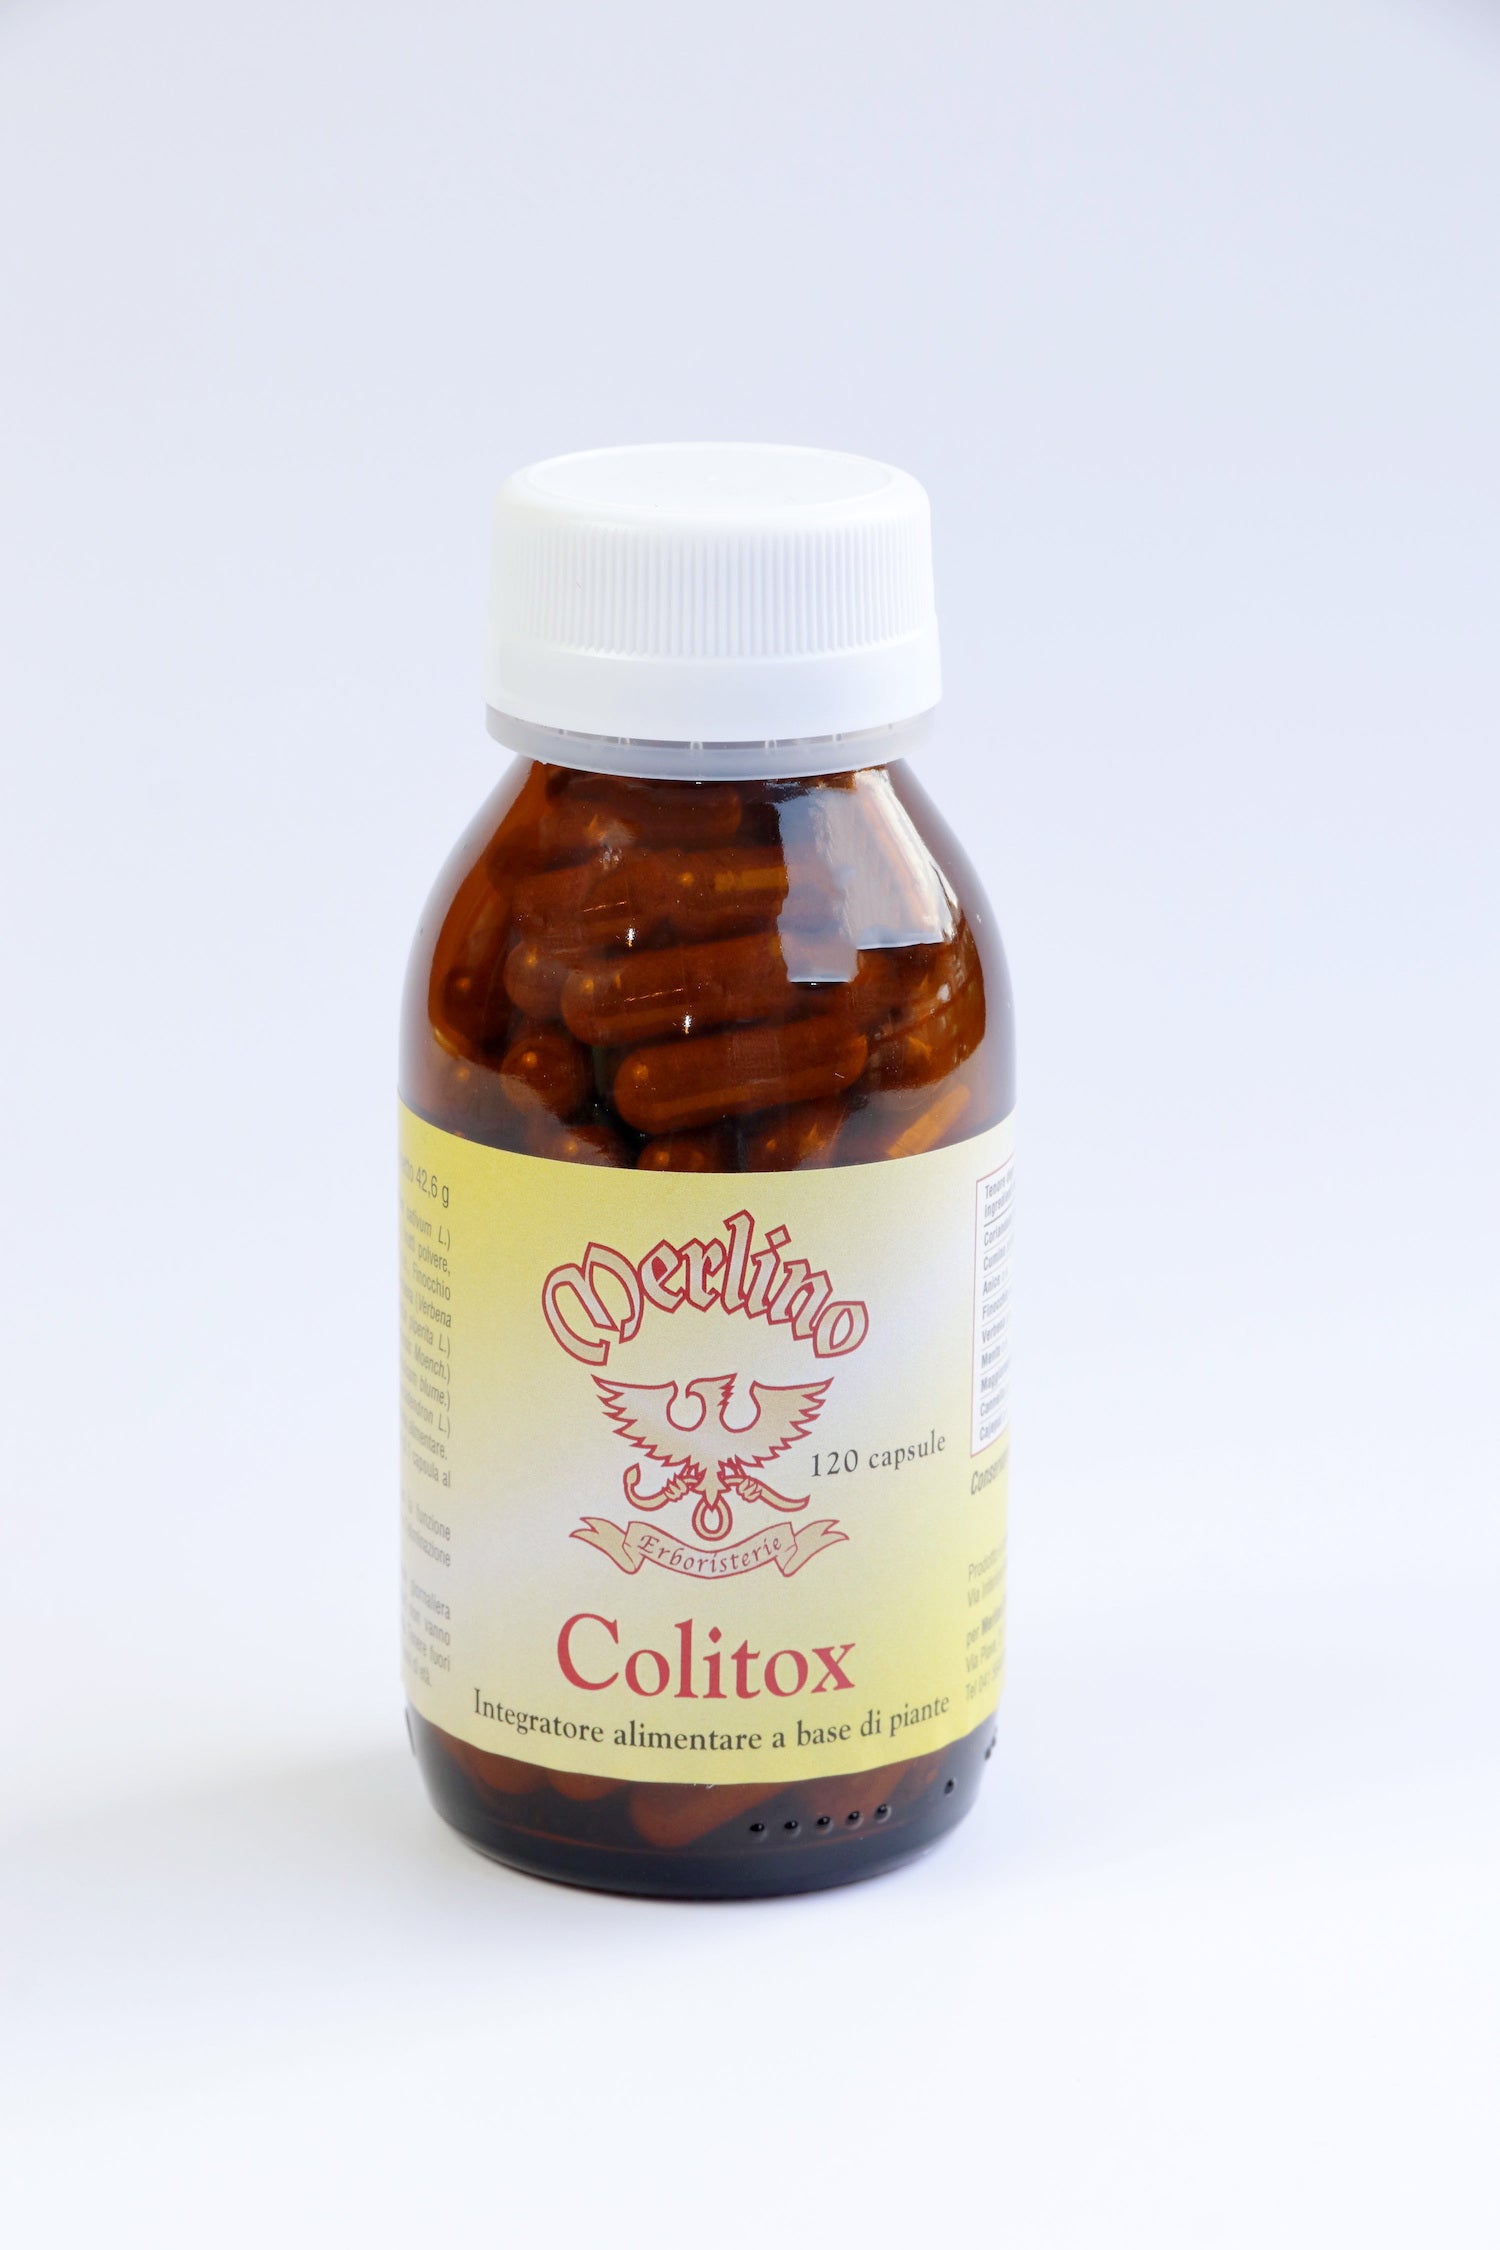 Colitox 120 cp